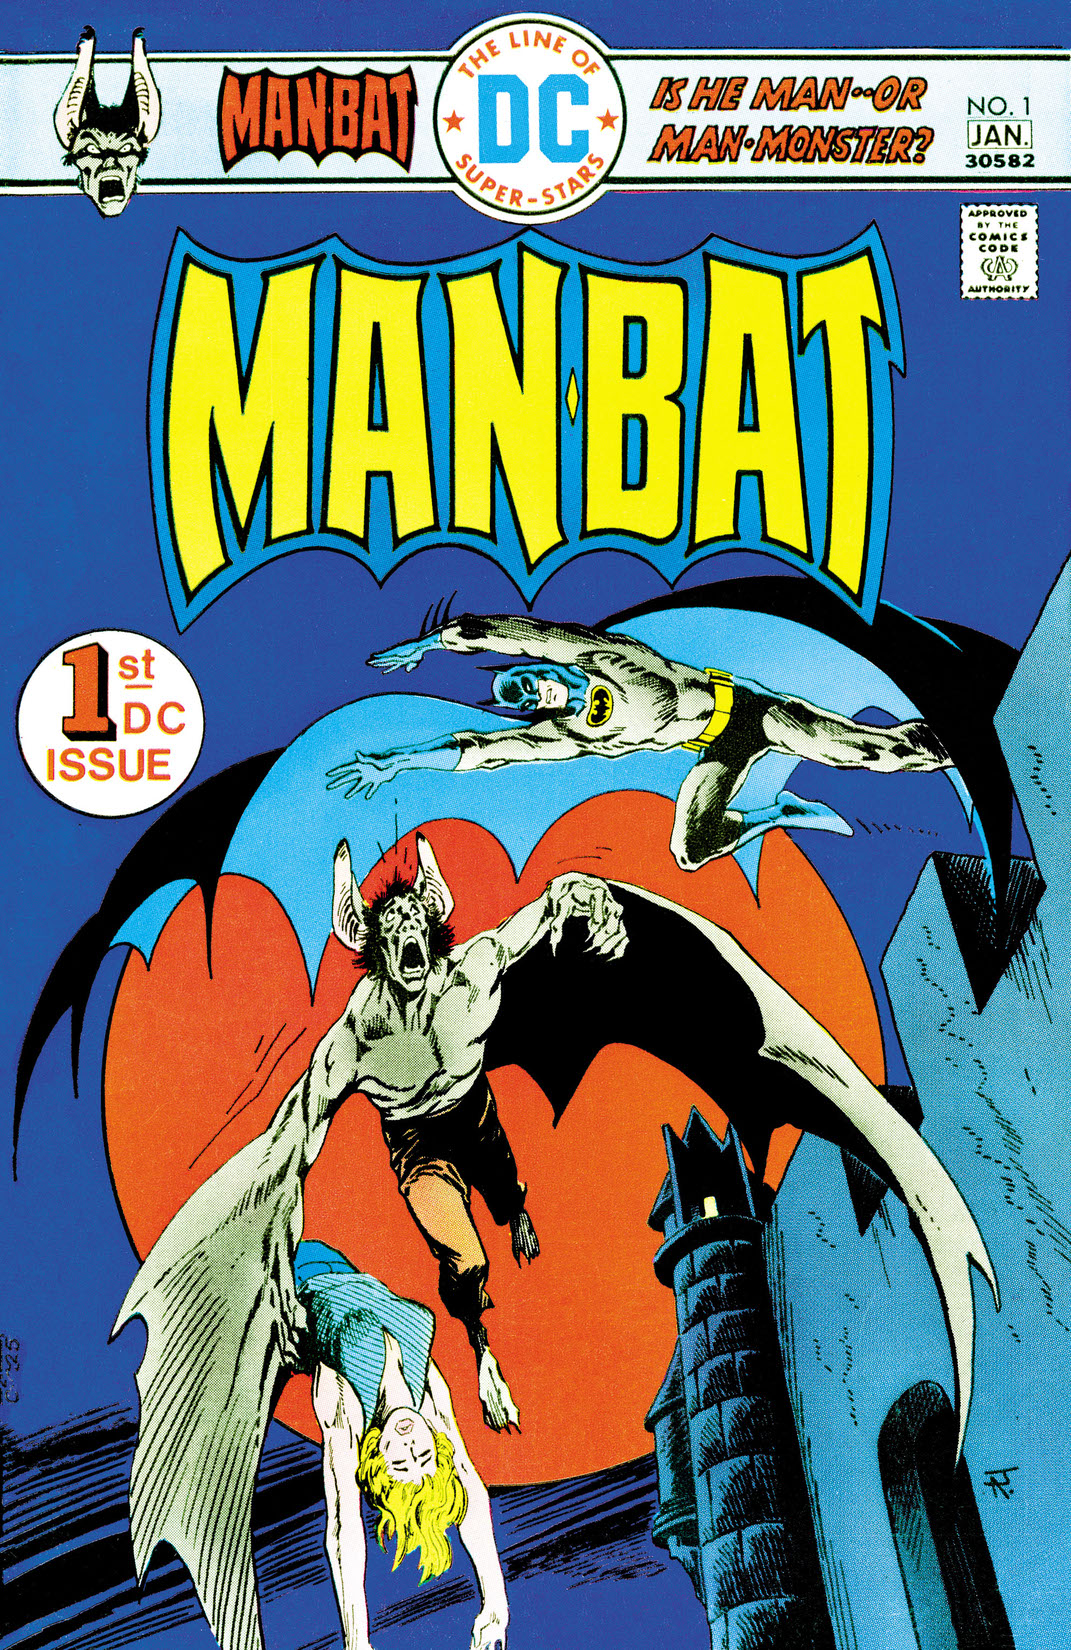 Man-Bat (1976-) #1 preview images